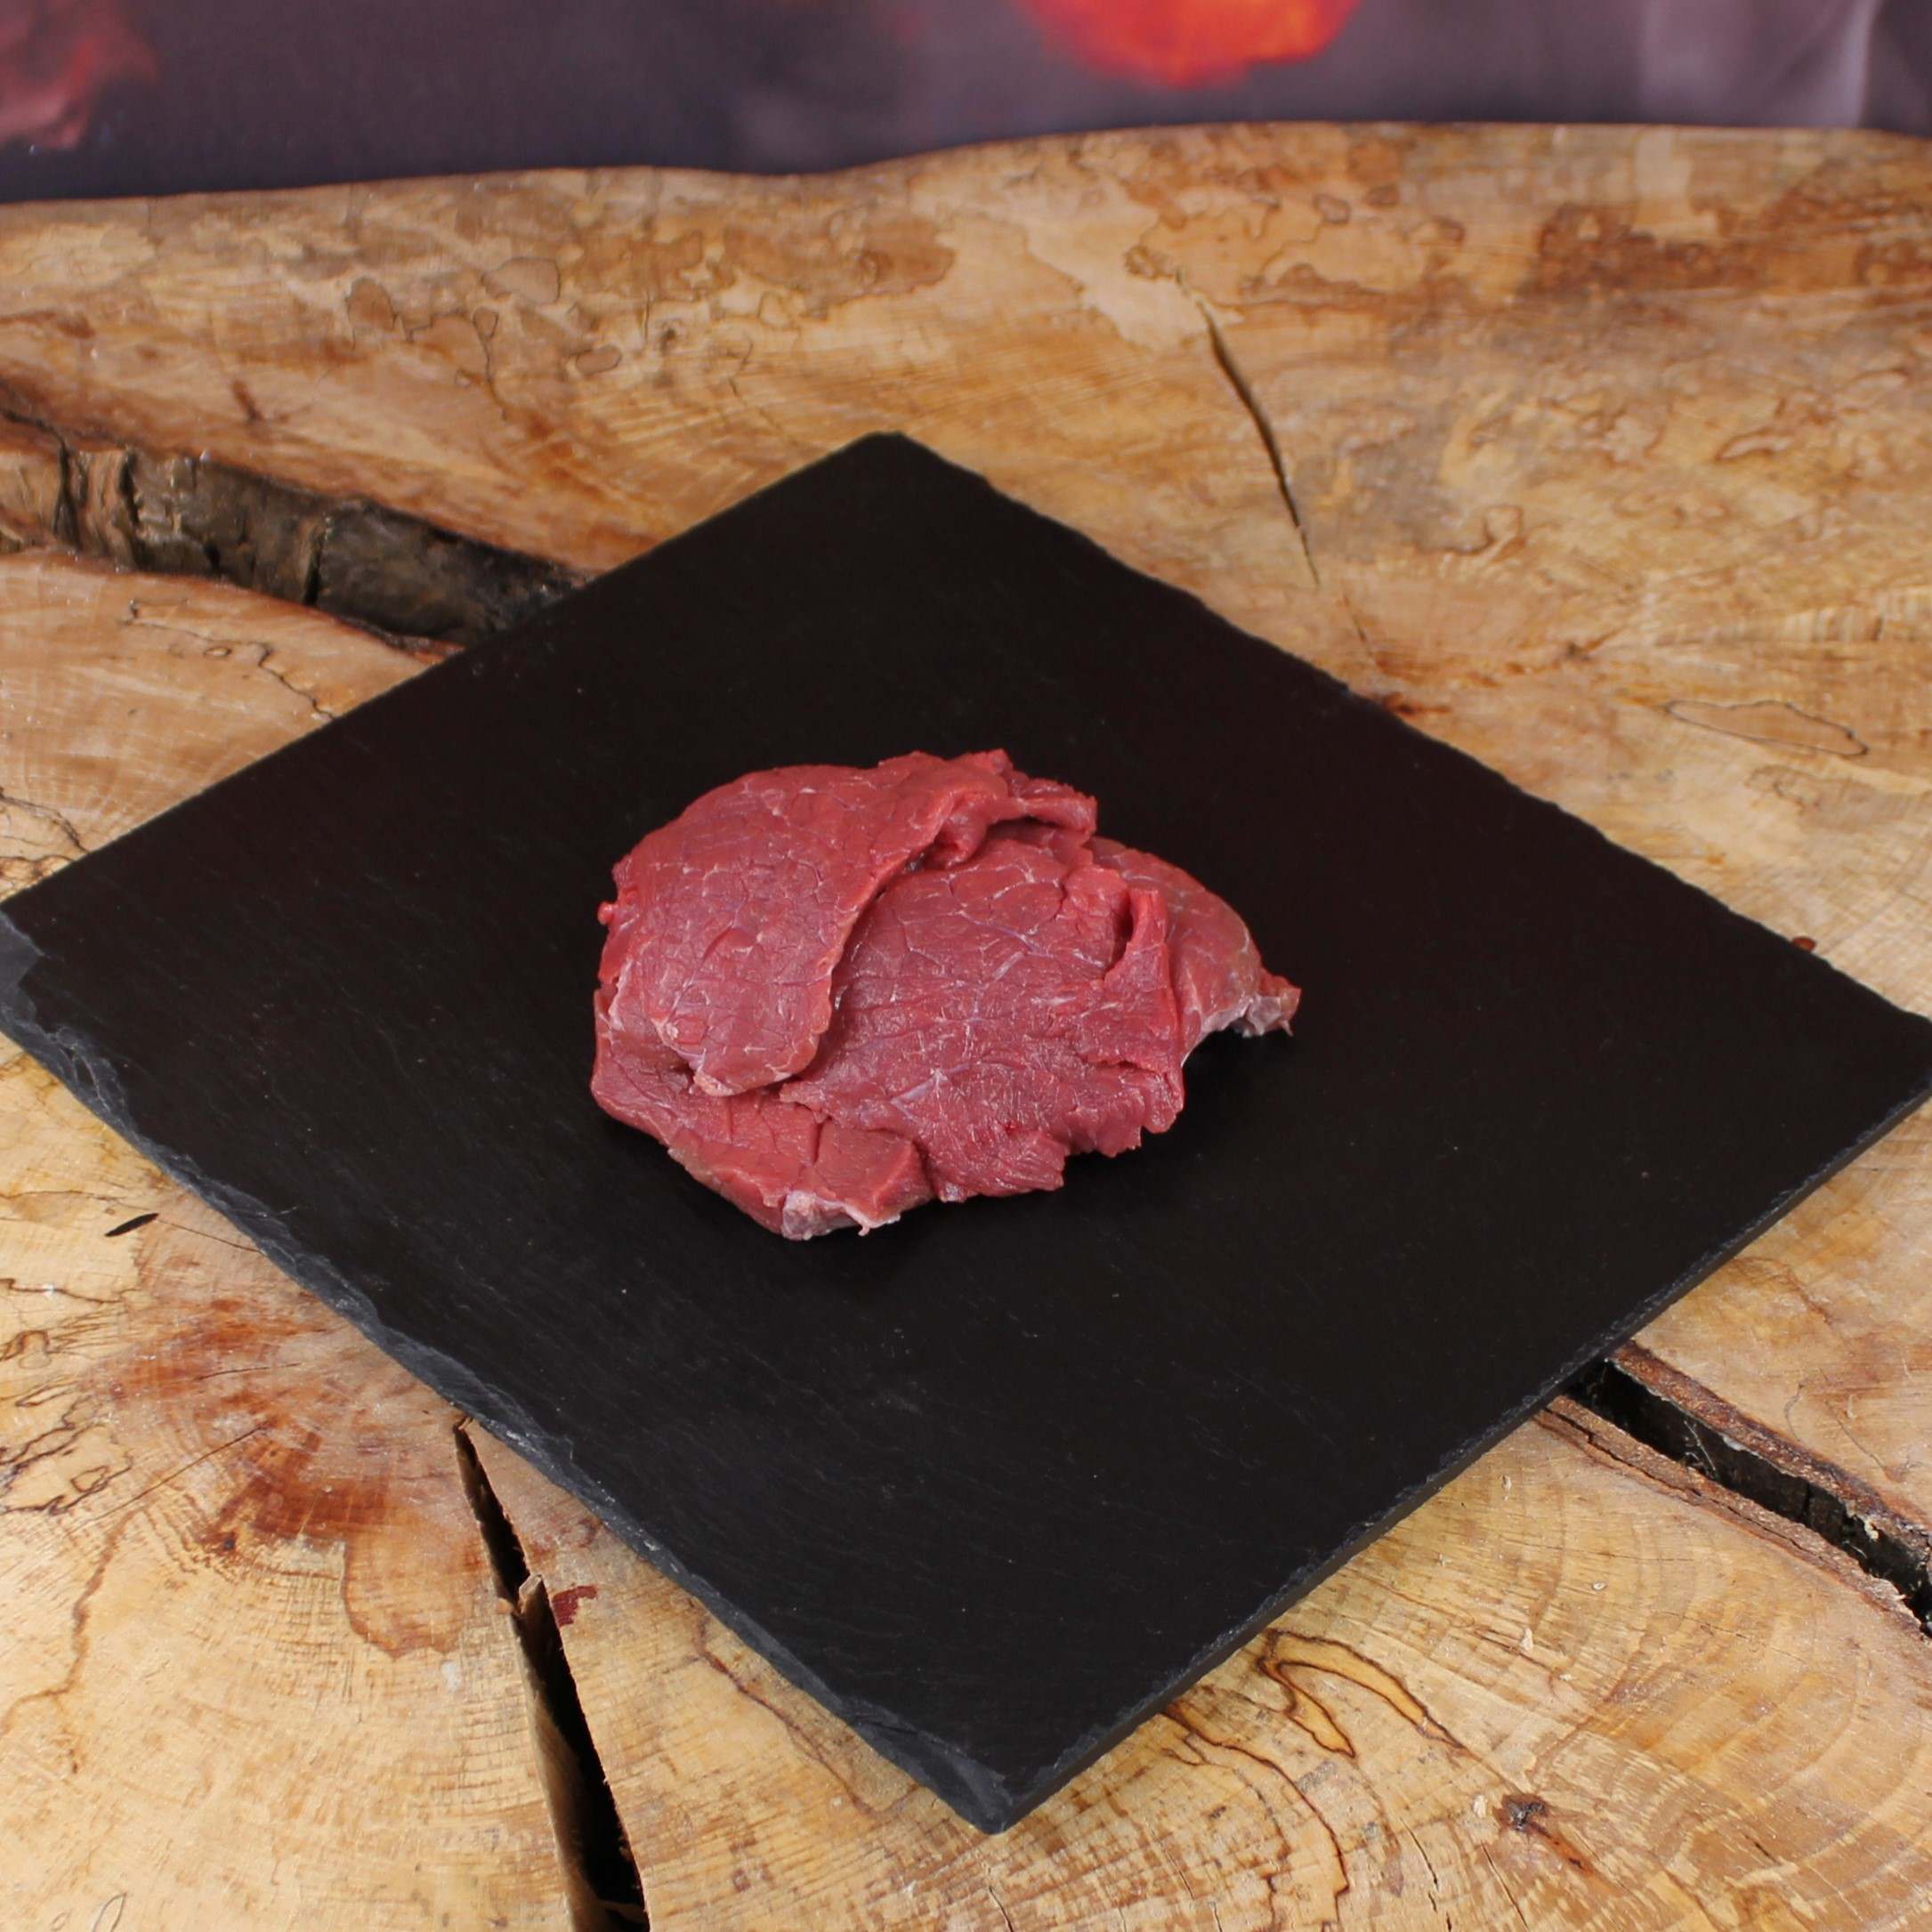 Bio Rindslungenbraten / Rindsfilet auf Fondue oder Raclette geschnitten